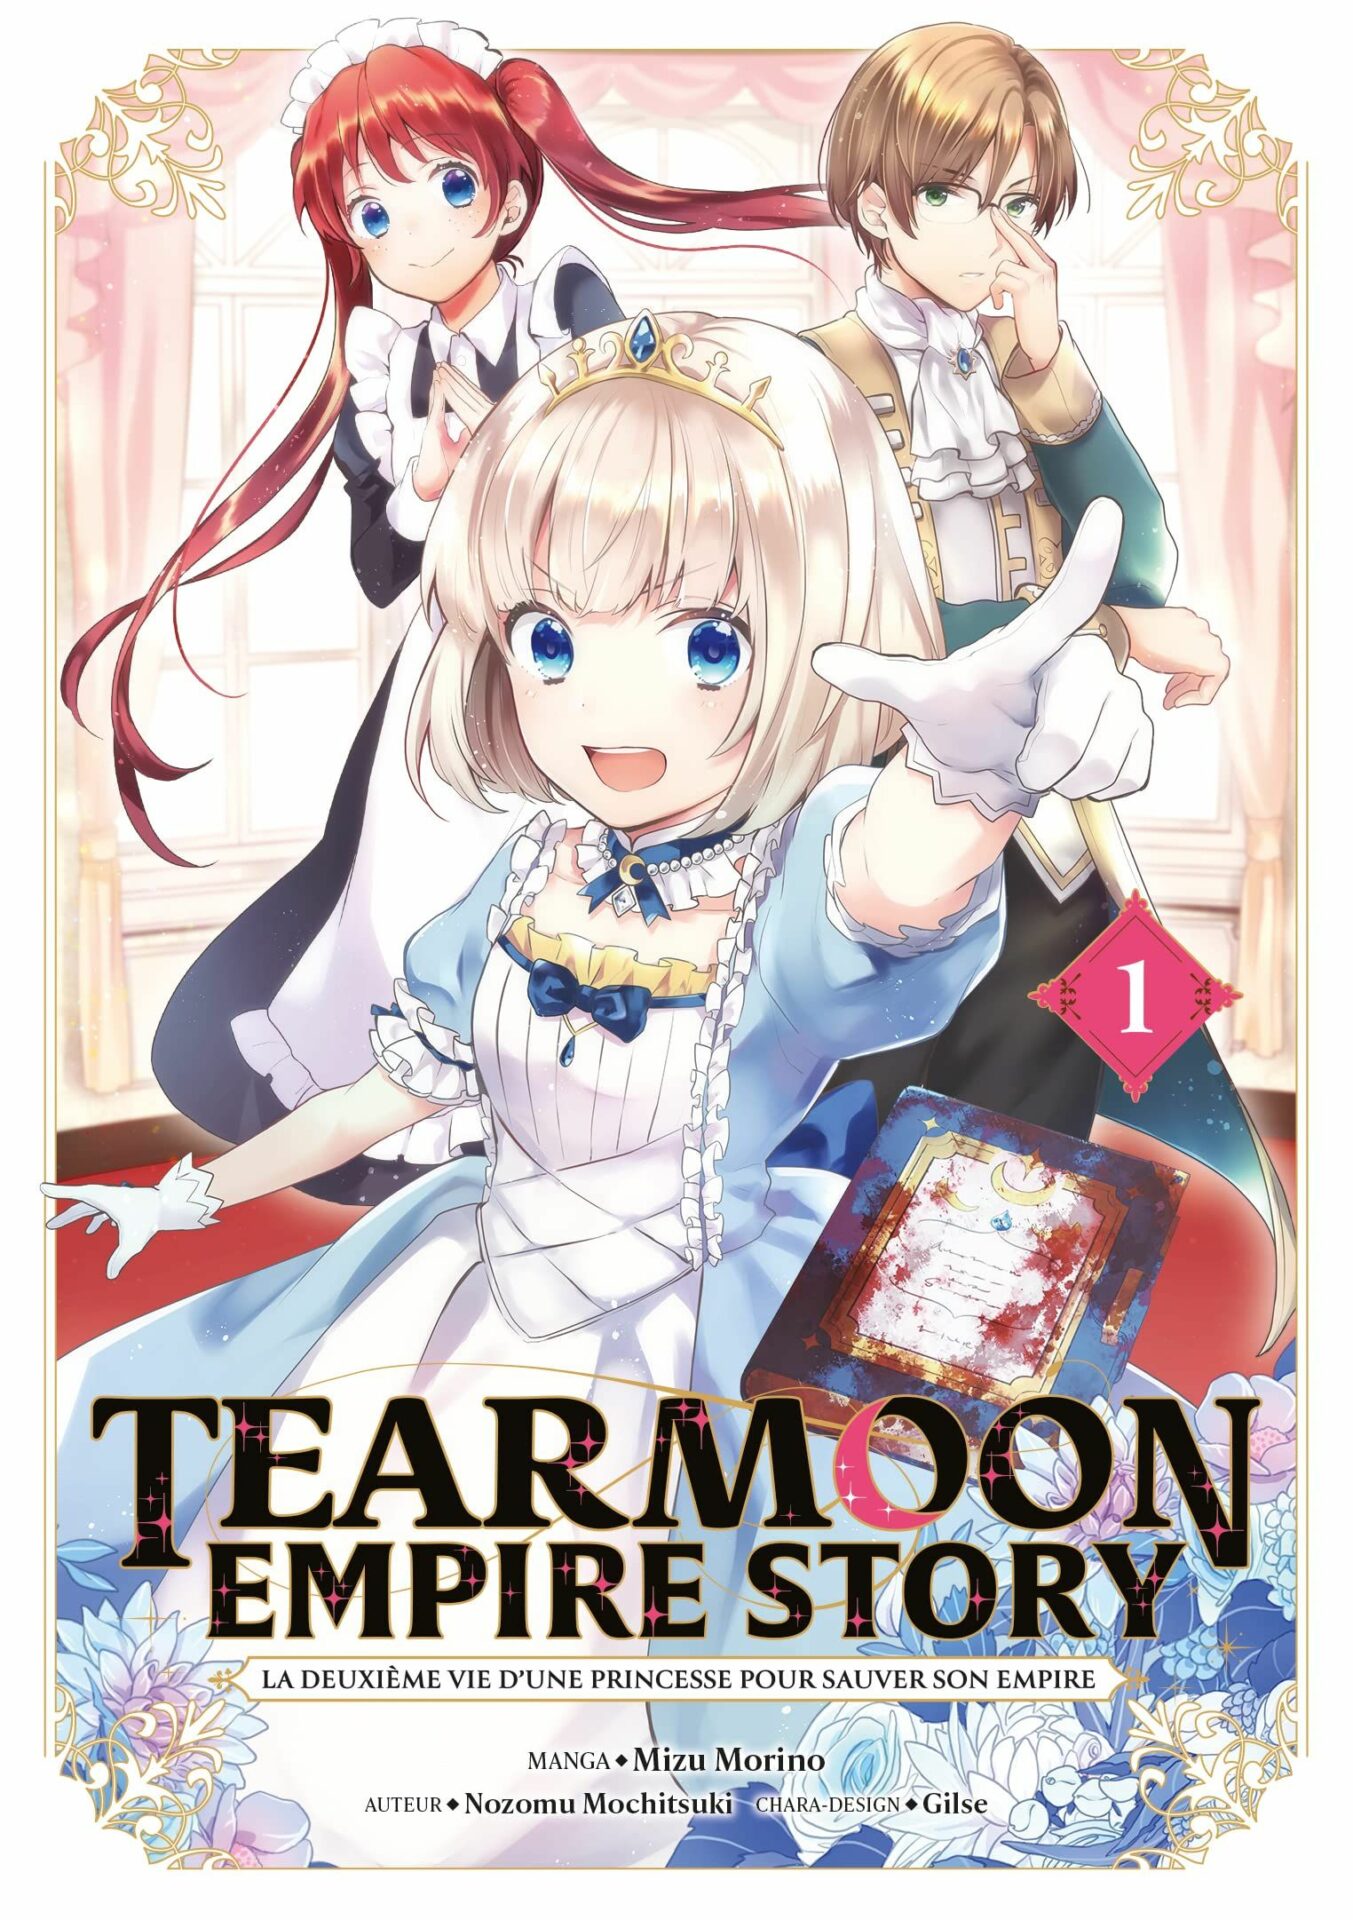 Tearmoon Empire Story Vol.1